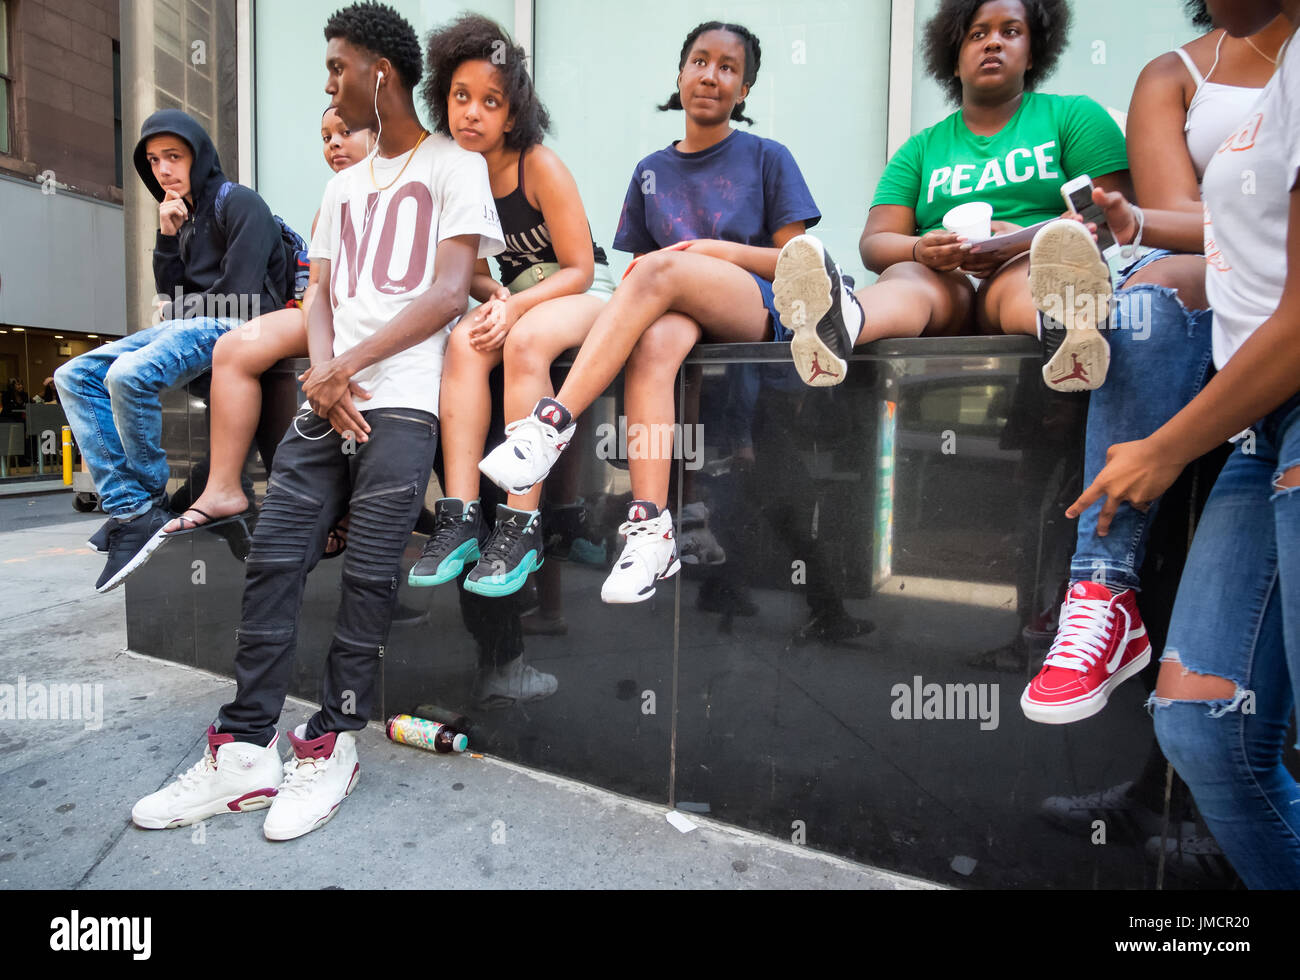 New York, 13 juin 2017 : un groupe d'adolescents afro-américains de traîner dans la rue sur une chaude journée d'été dans le sud de Manhattan. Banque D'Images